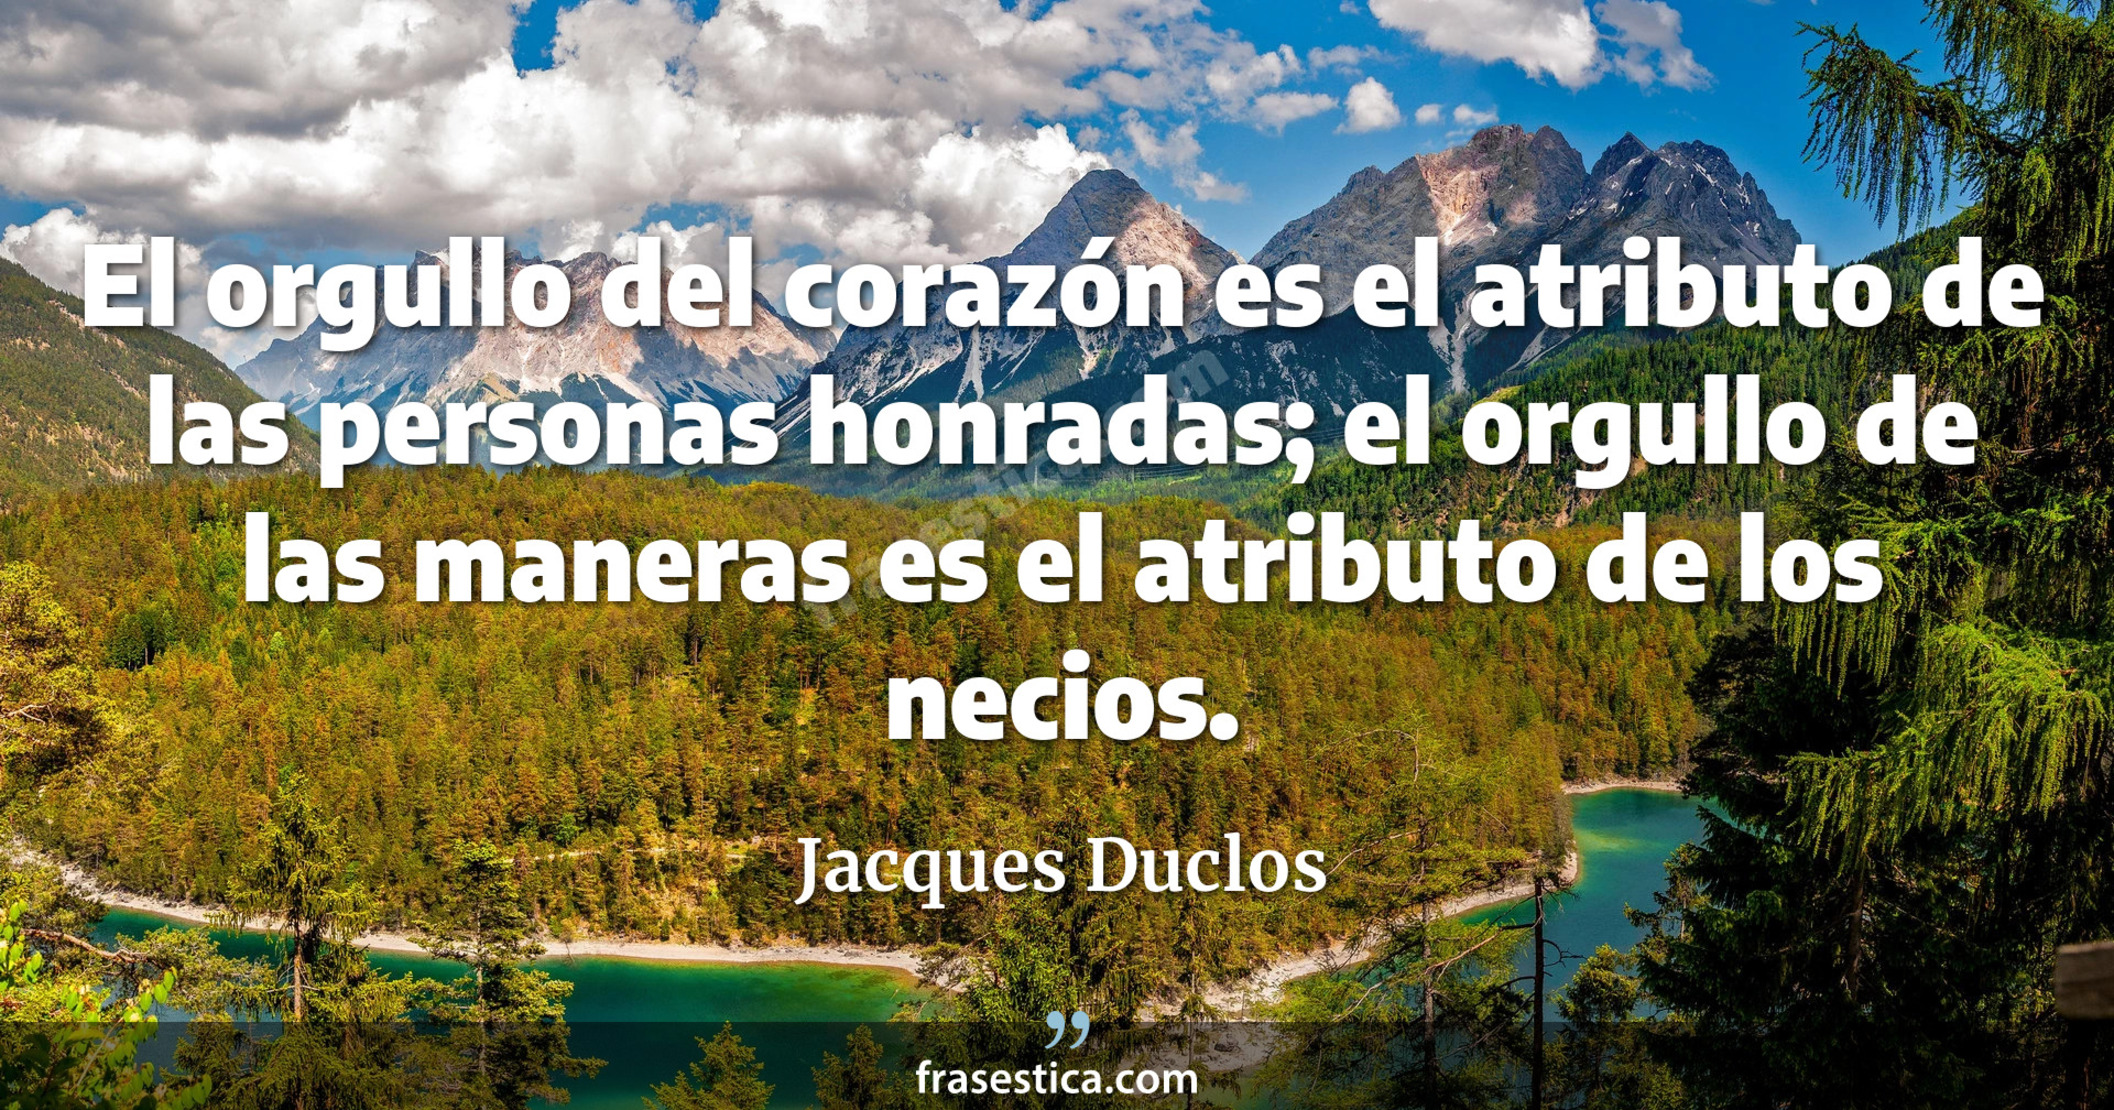 El orgullo del corazón es el atributo de las personas honradas; el orgullo de las maneras es el atributo de los necios. - Jacques Duclos